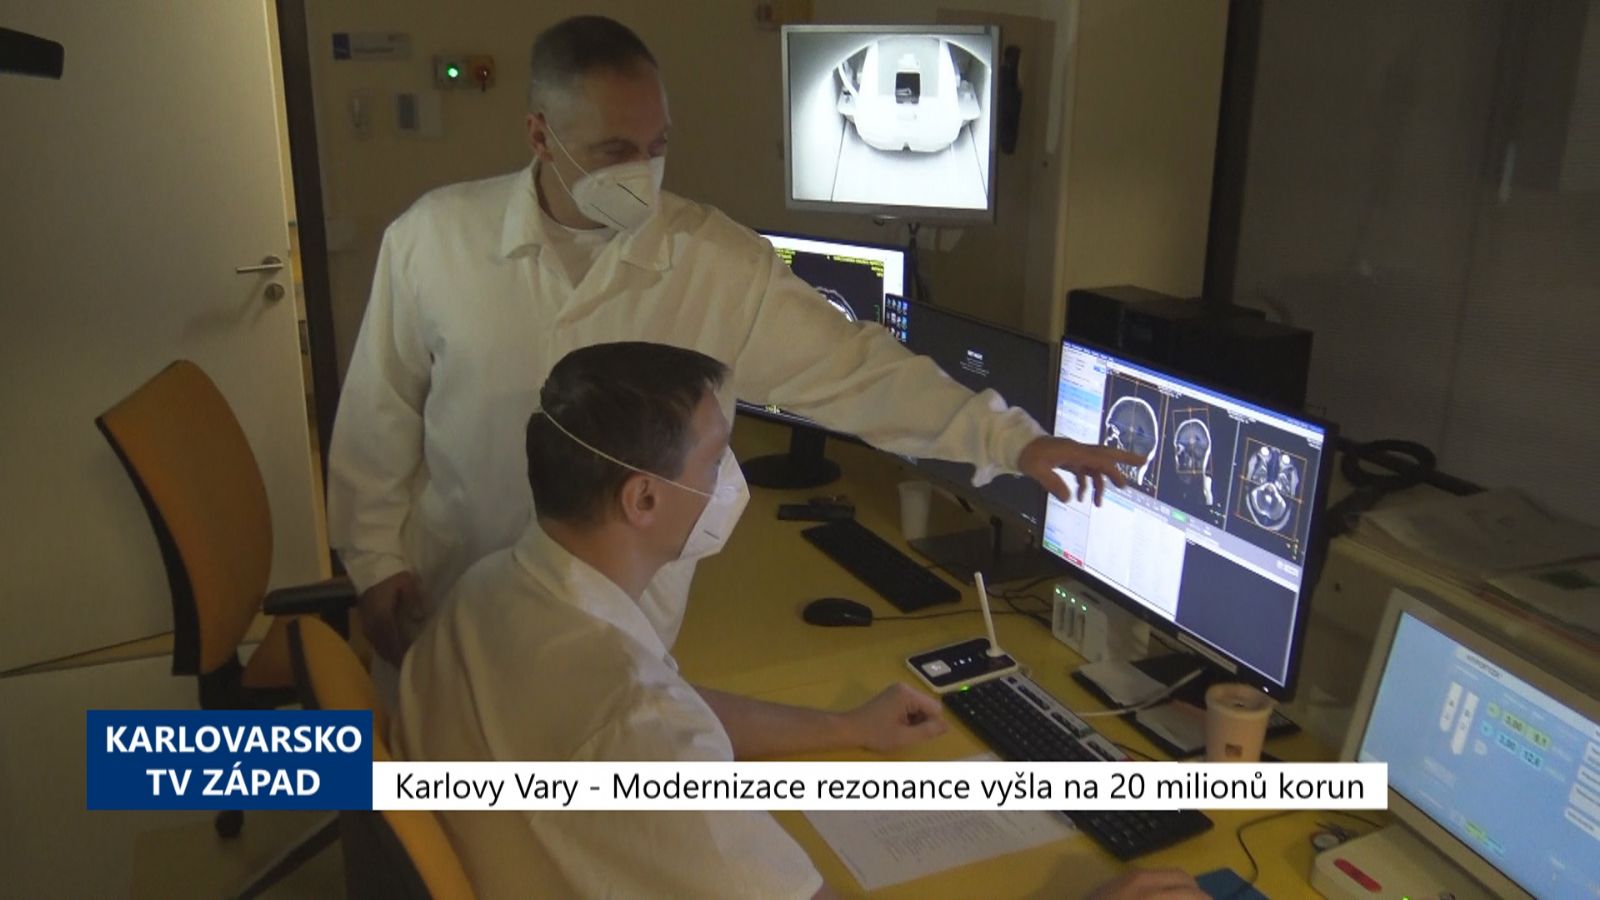 Karlovy Vary: Modernizace rezonance vyšla na 20 milionů korun (TV Západ)